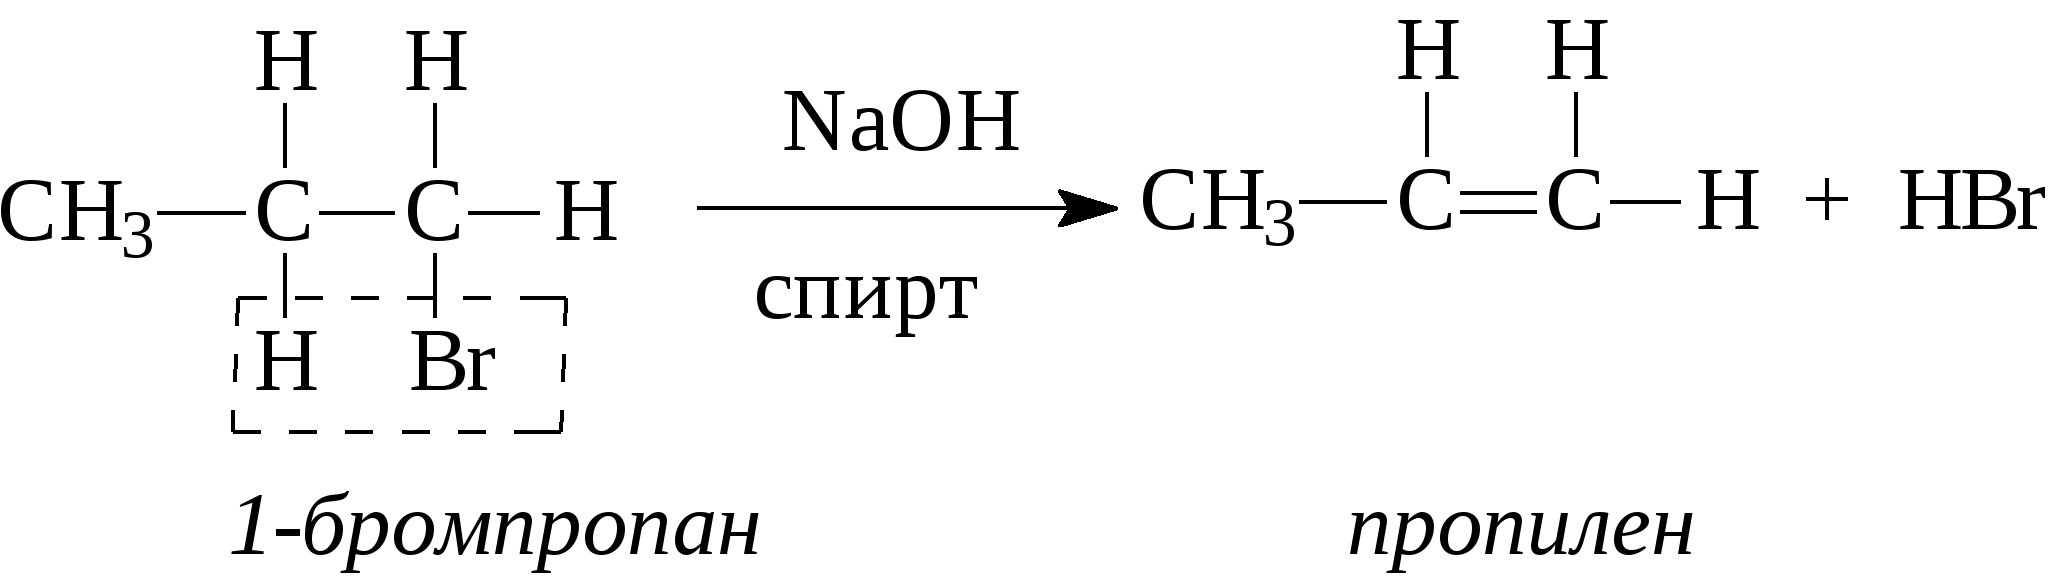 Naoh водный реакции. Бромпропан NAOH спиртовой. Получение этилена из этанола. Получение этилена из этилового спирта. Из этилена в этанол.